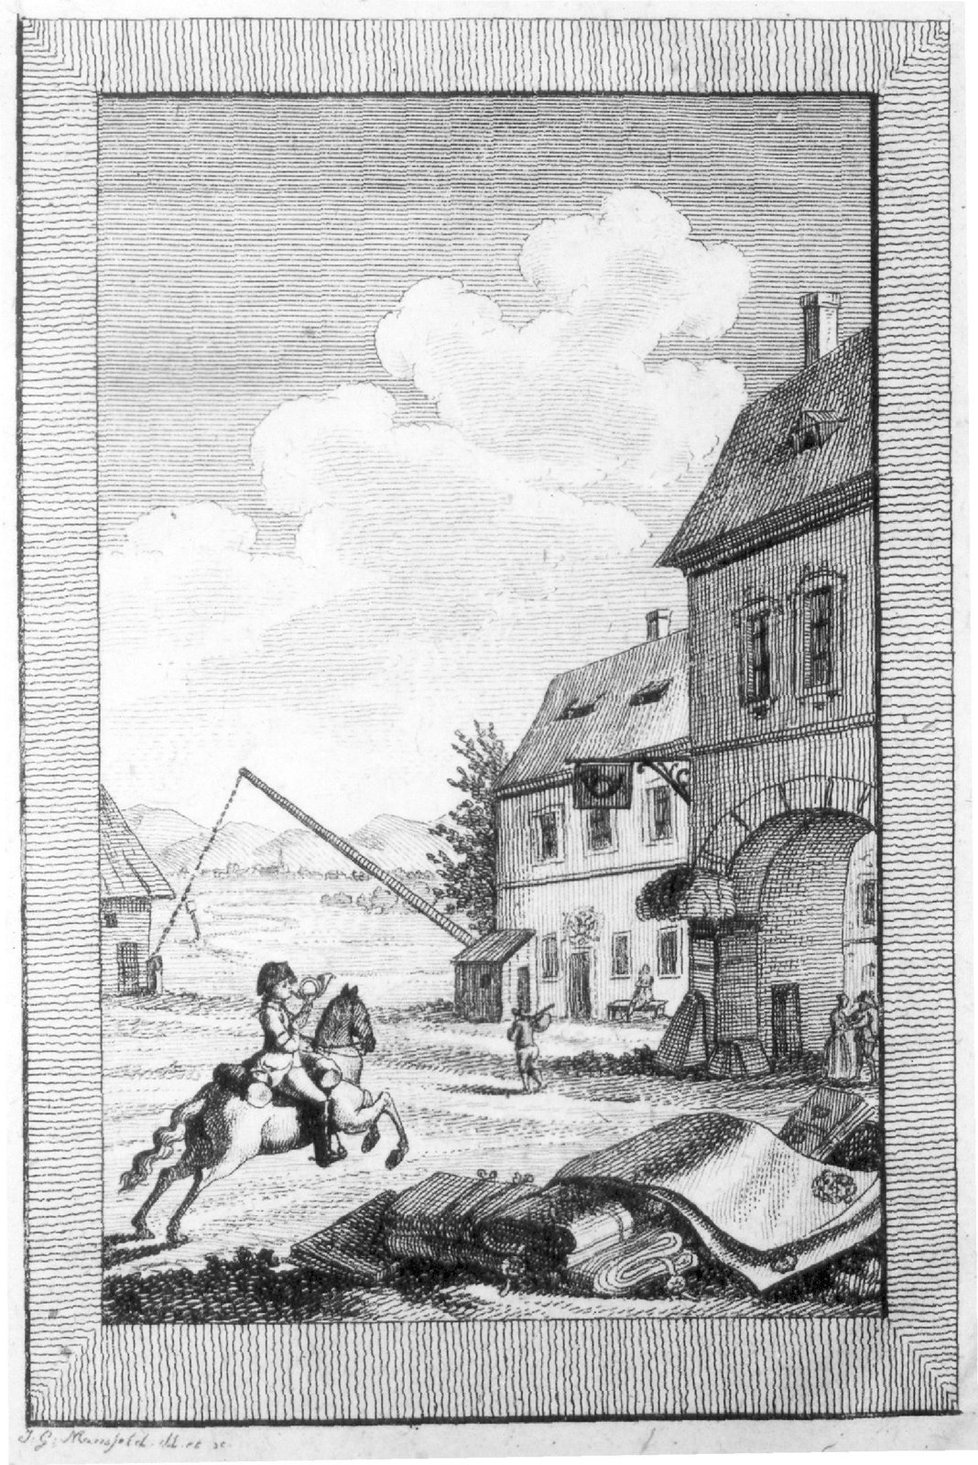 Příjezd kurýra do poštovní stanice v roce 1789